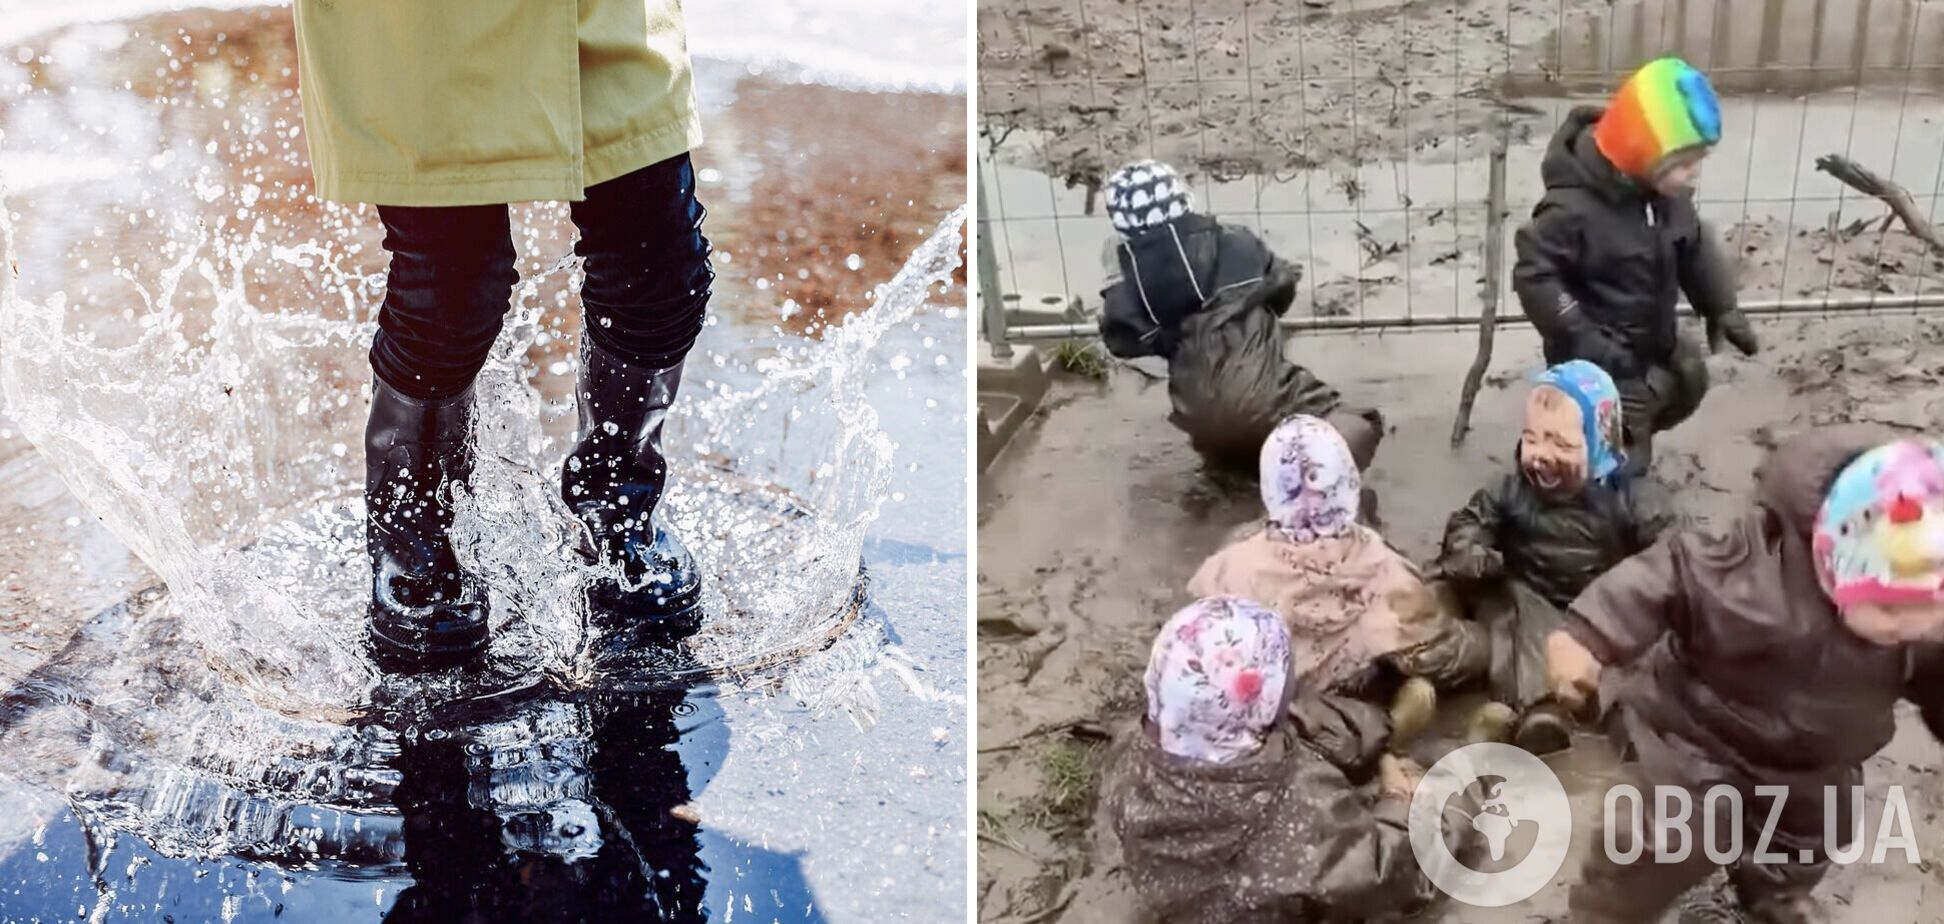 'Что дети должны научиться из погружения в грязи?' В сети возникла дискуссия из-за видео из детского сада Дании